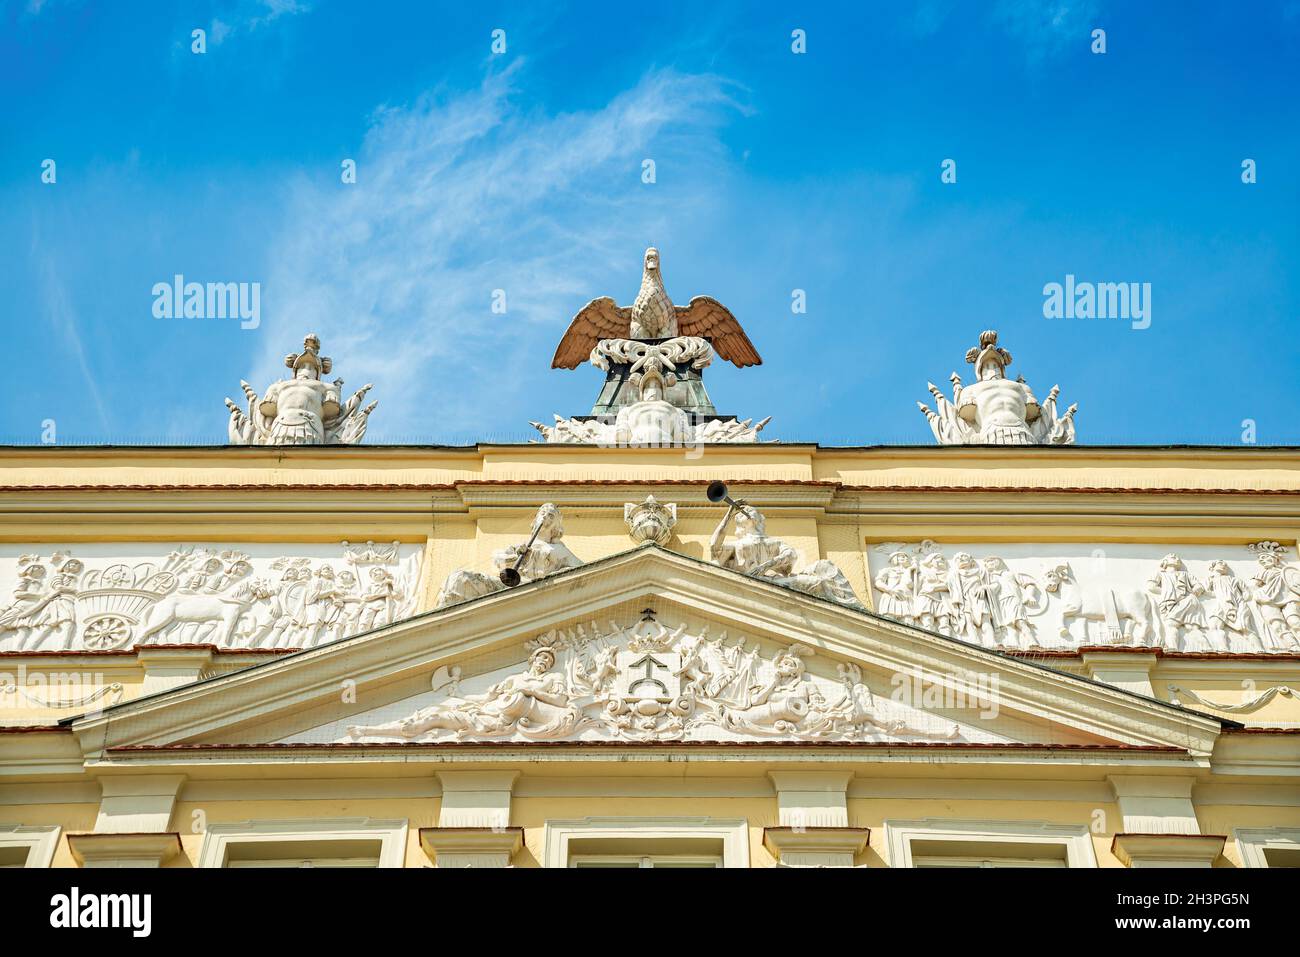 Posen, Polen - 09. August 2021. Statuen auf dem Dach der Kornicka Bibliothek - Biblioteka Kornicka in Palac Dzialynskich mit Schutz vor Tauben Stockfoto